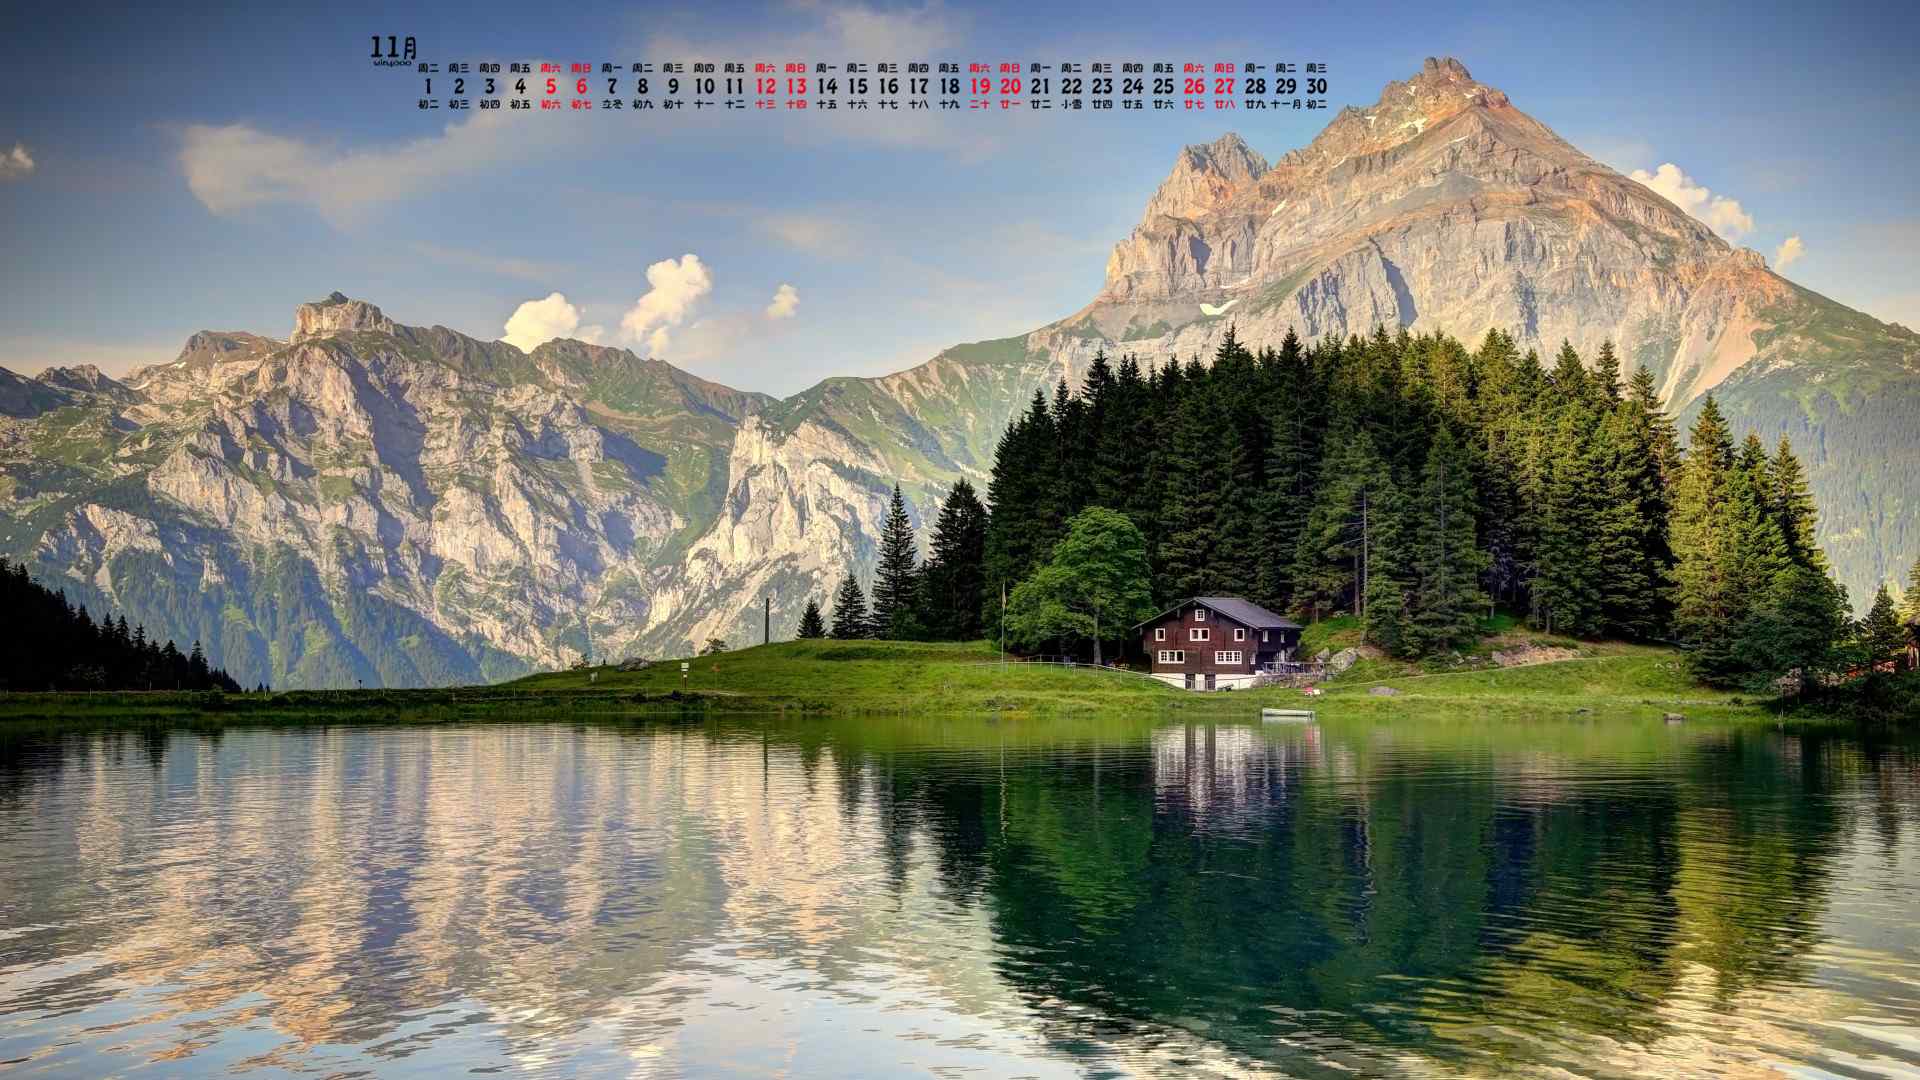 2016年11月日历云雾中的瑞士阿尔卑斯山风景图片壁纸